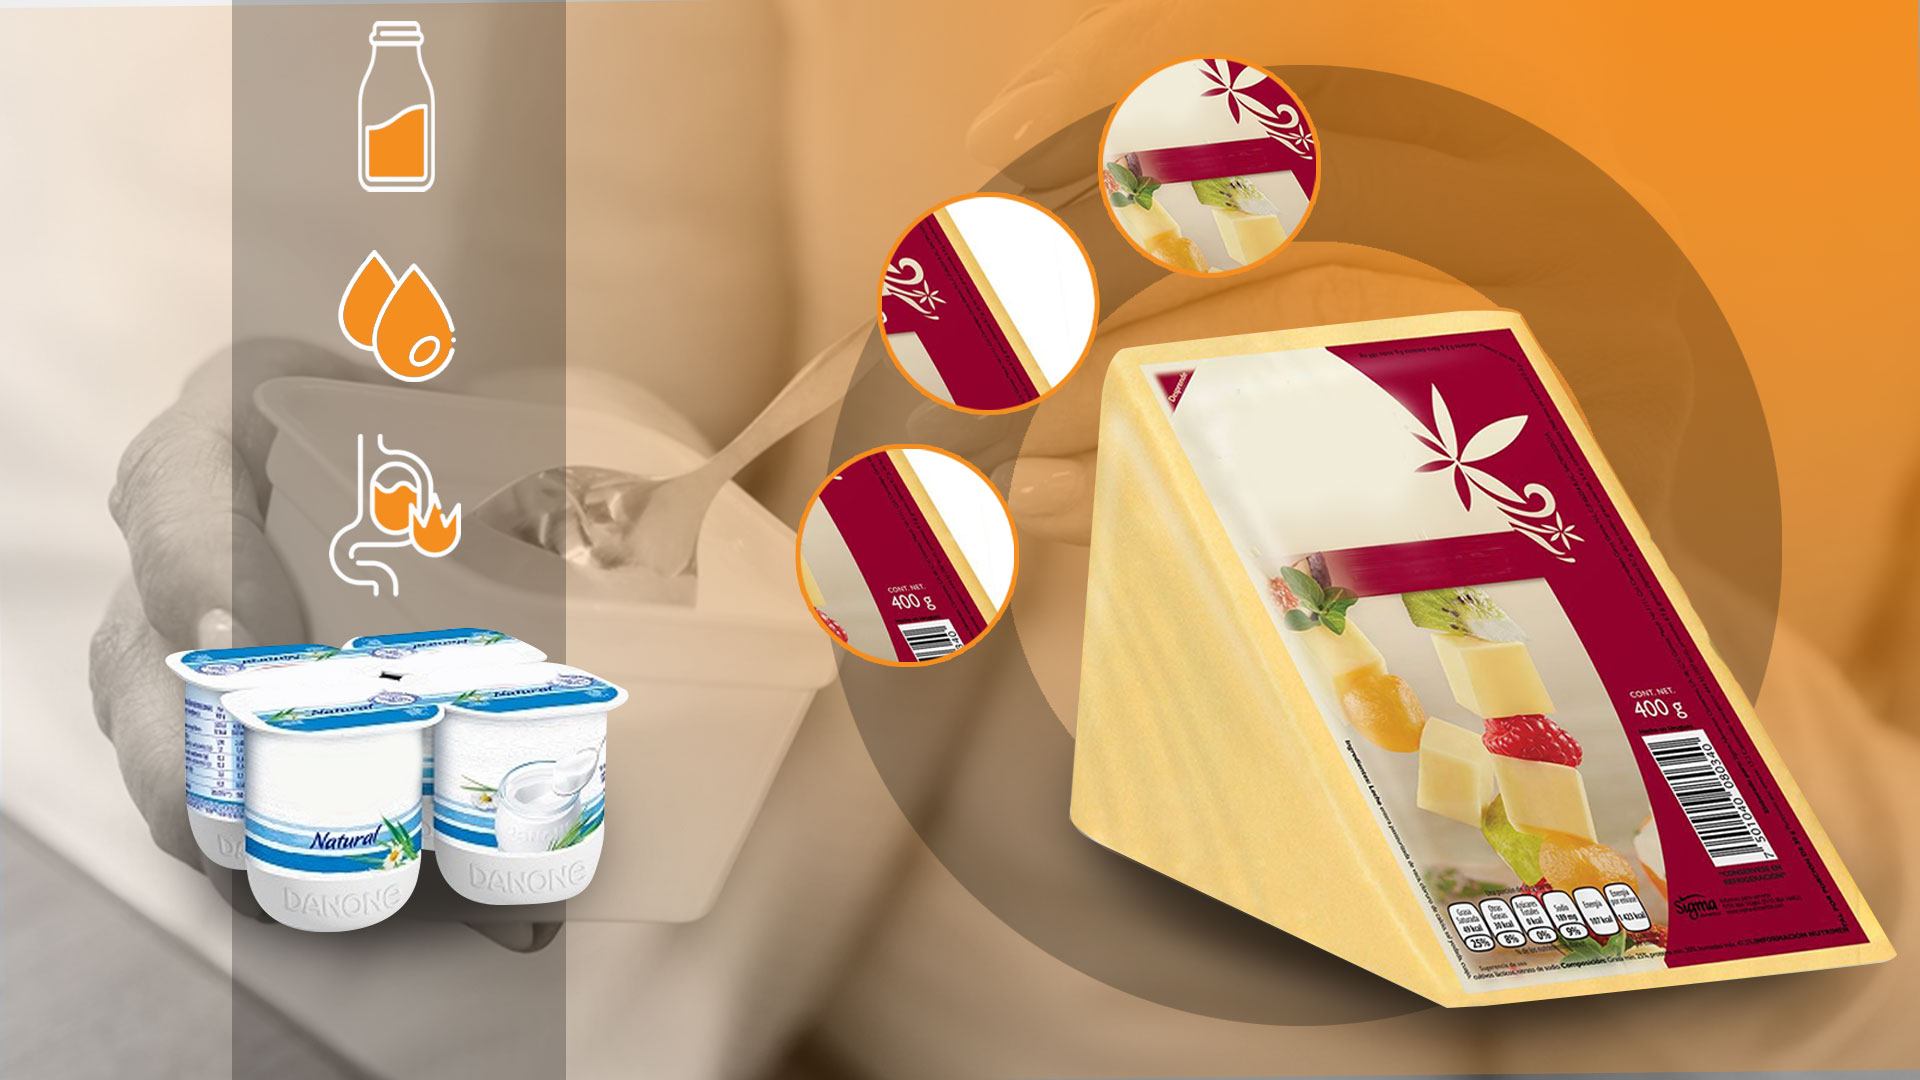 Solo tres de las marcas estudiadas contienen los límites establecidos de azucares añadidos
(queso Jovani Pérez)